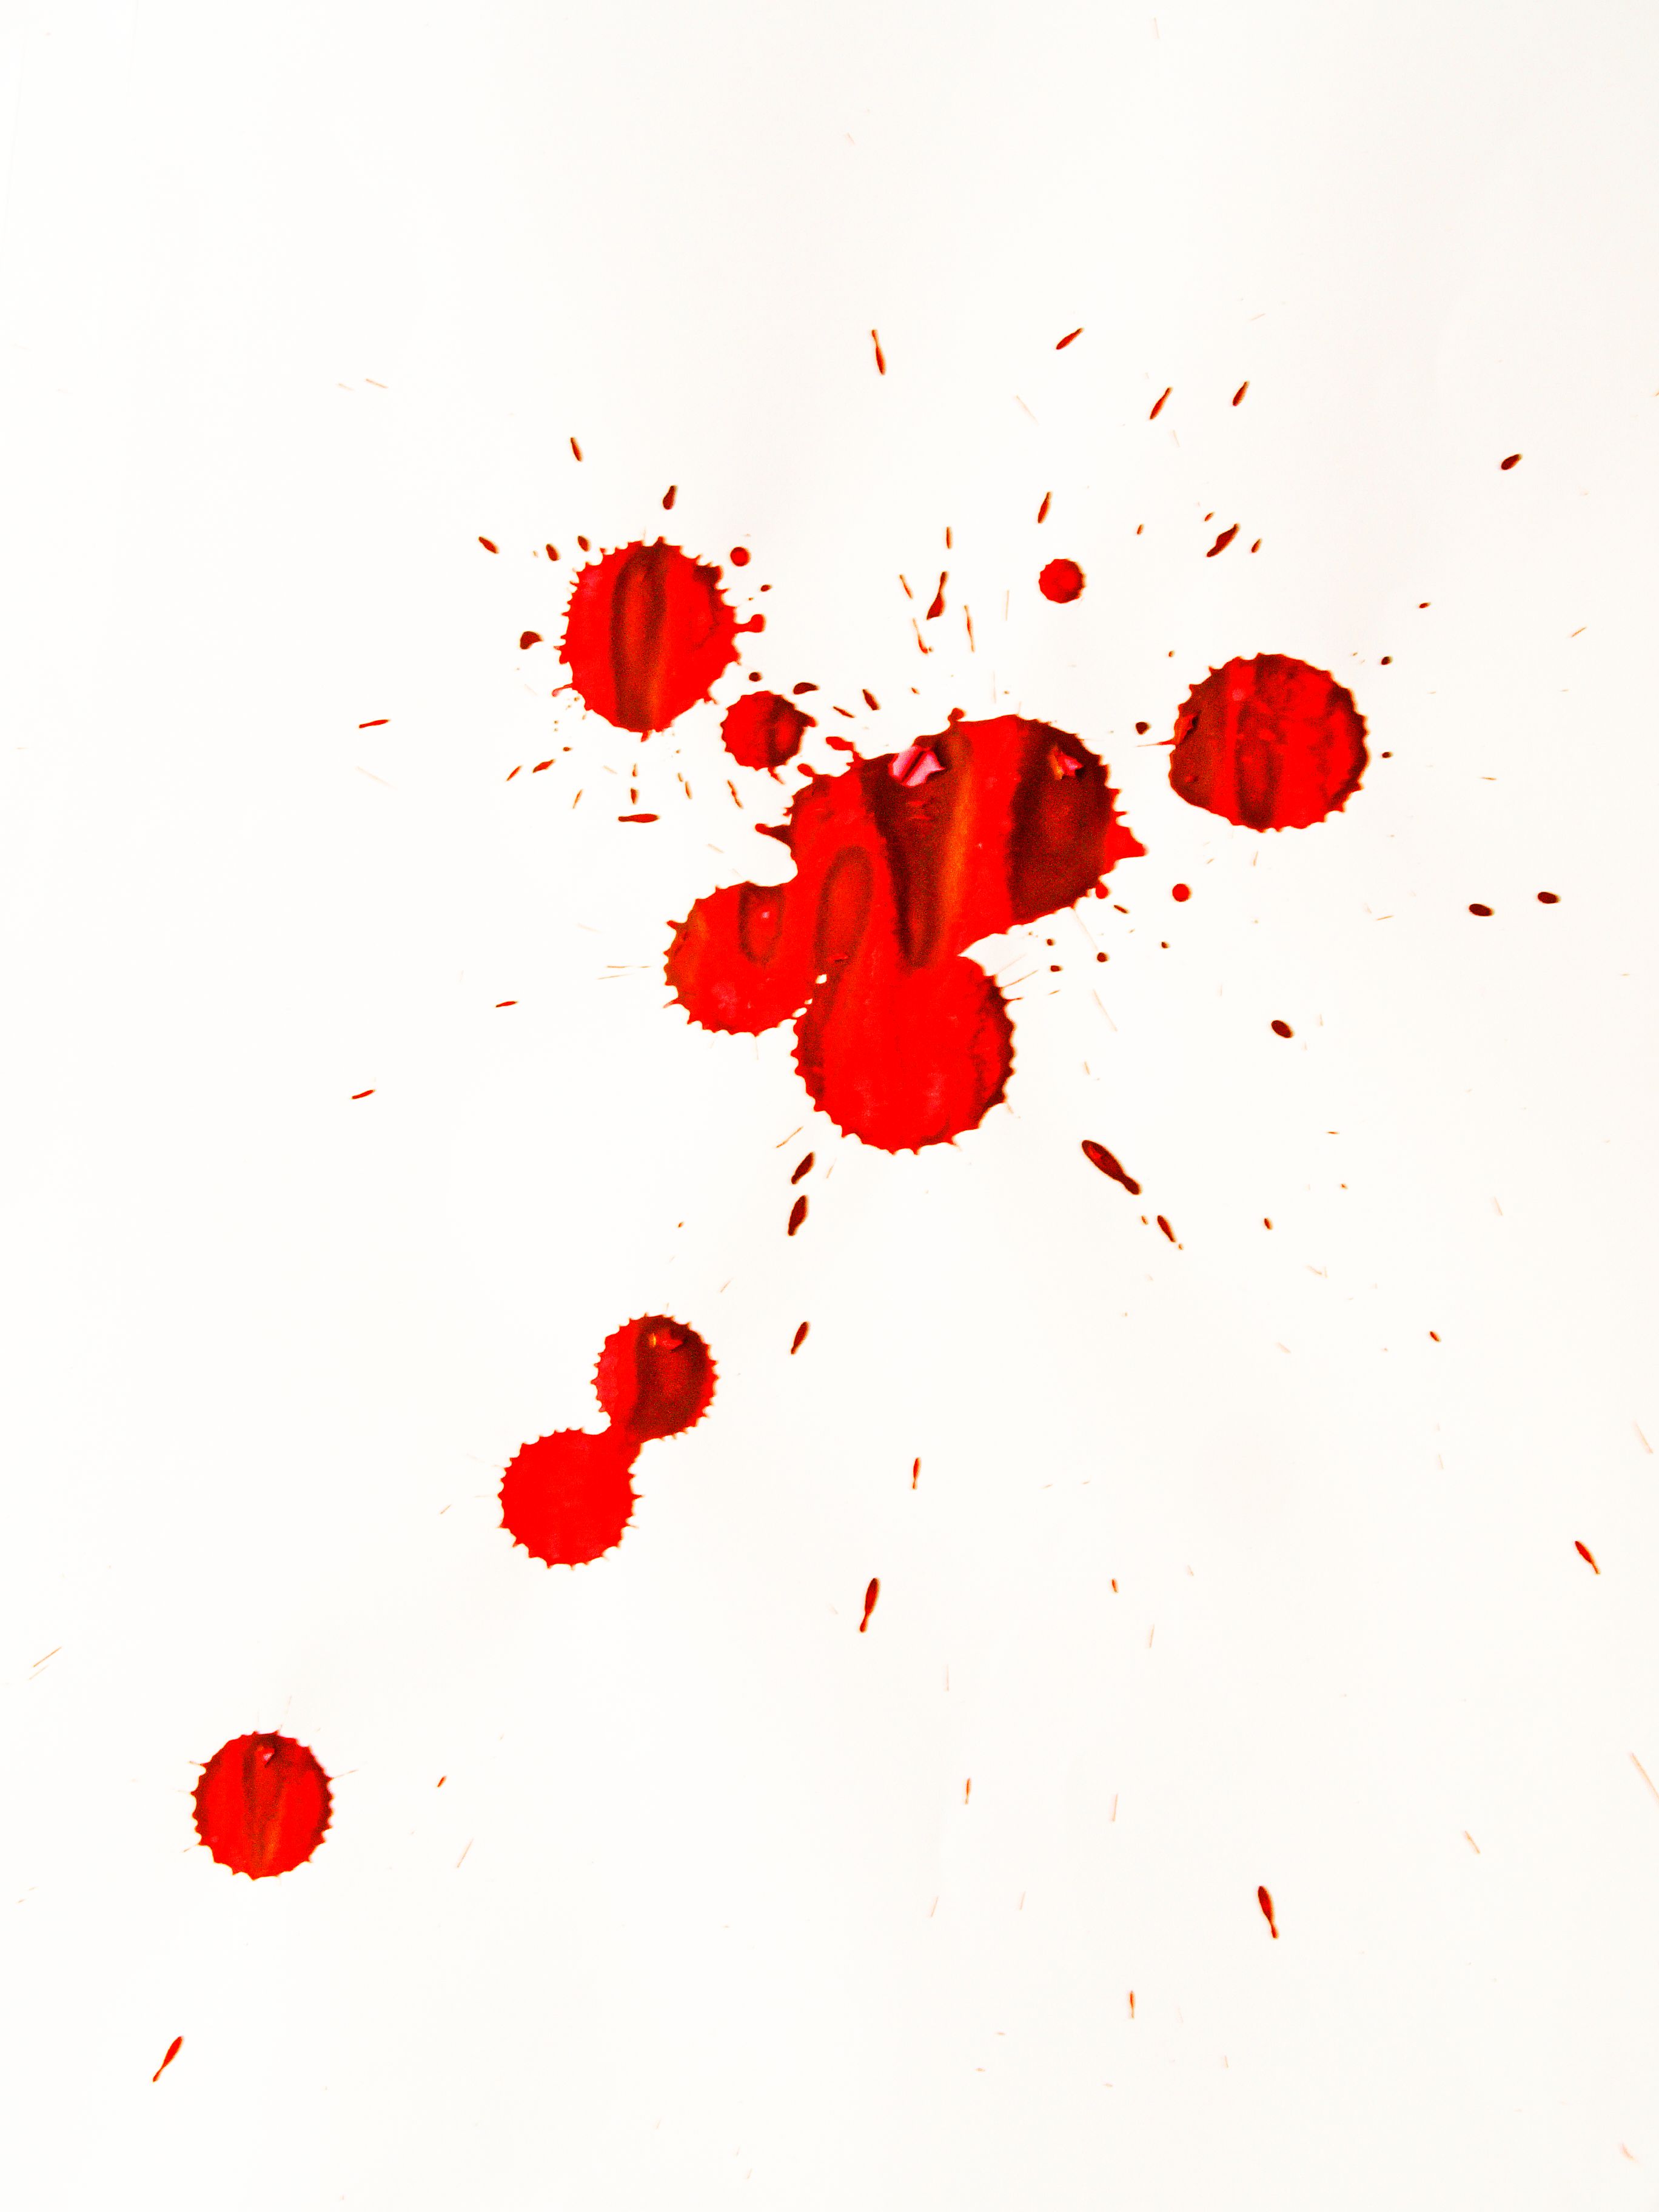 Blood splatter | photo page - everystockphoto